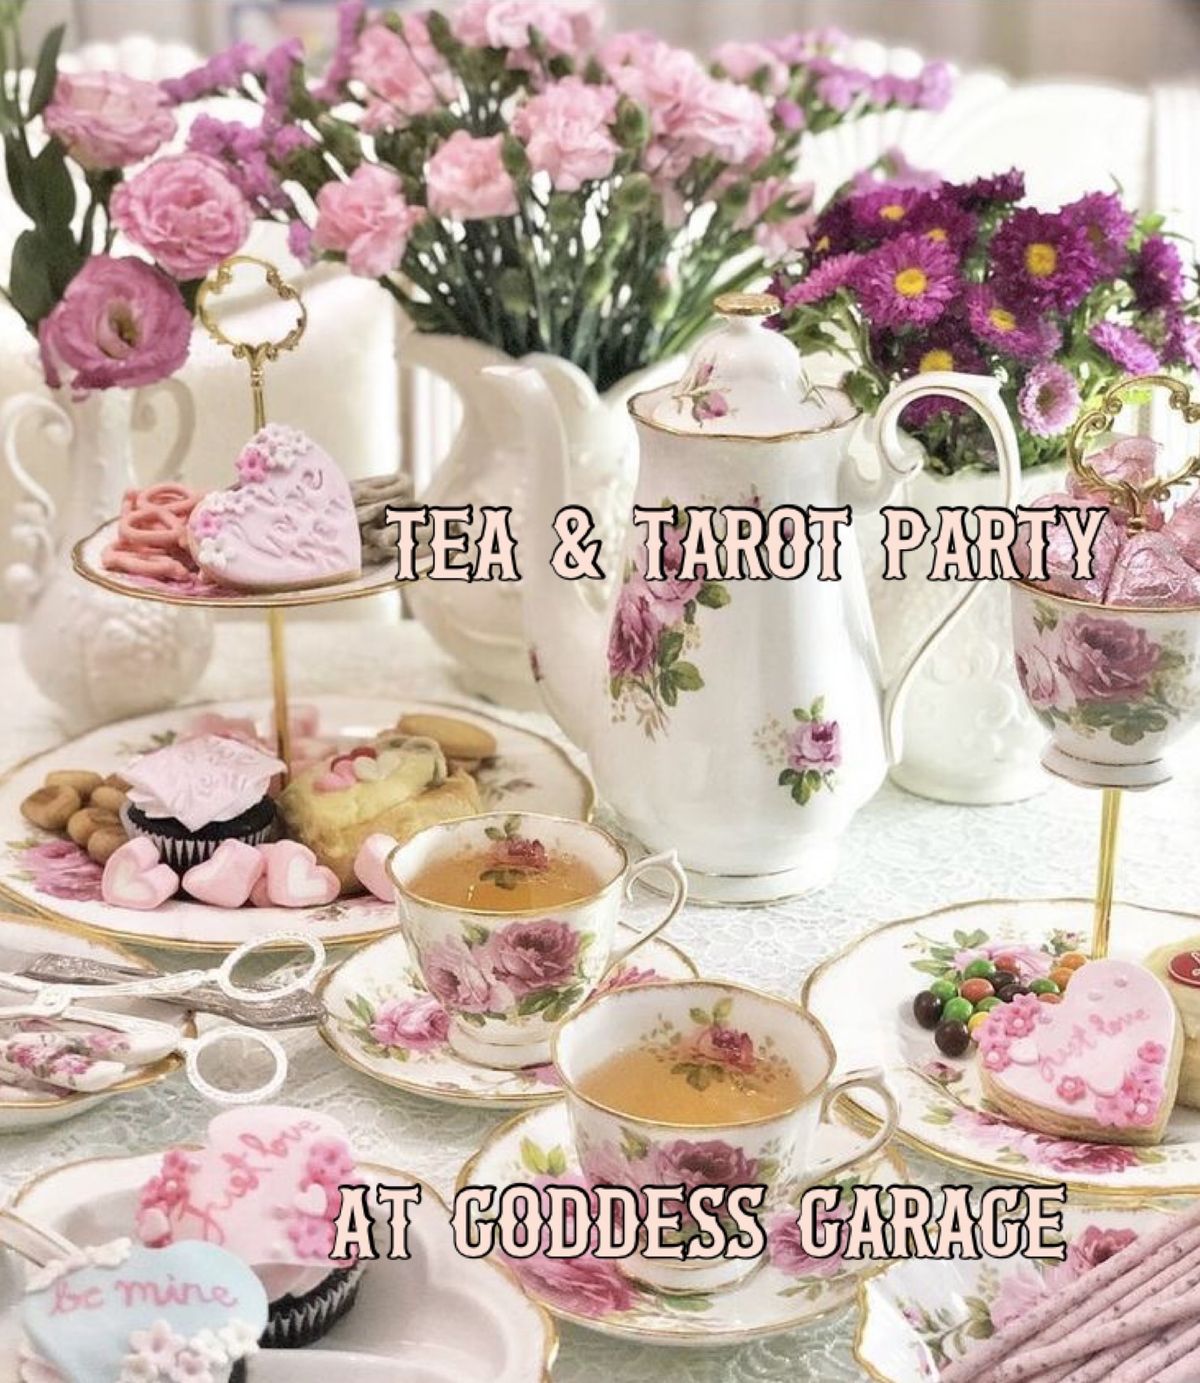 Summertime High Tea & Tarot Party! 